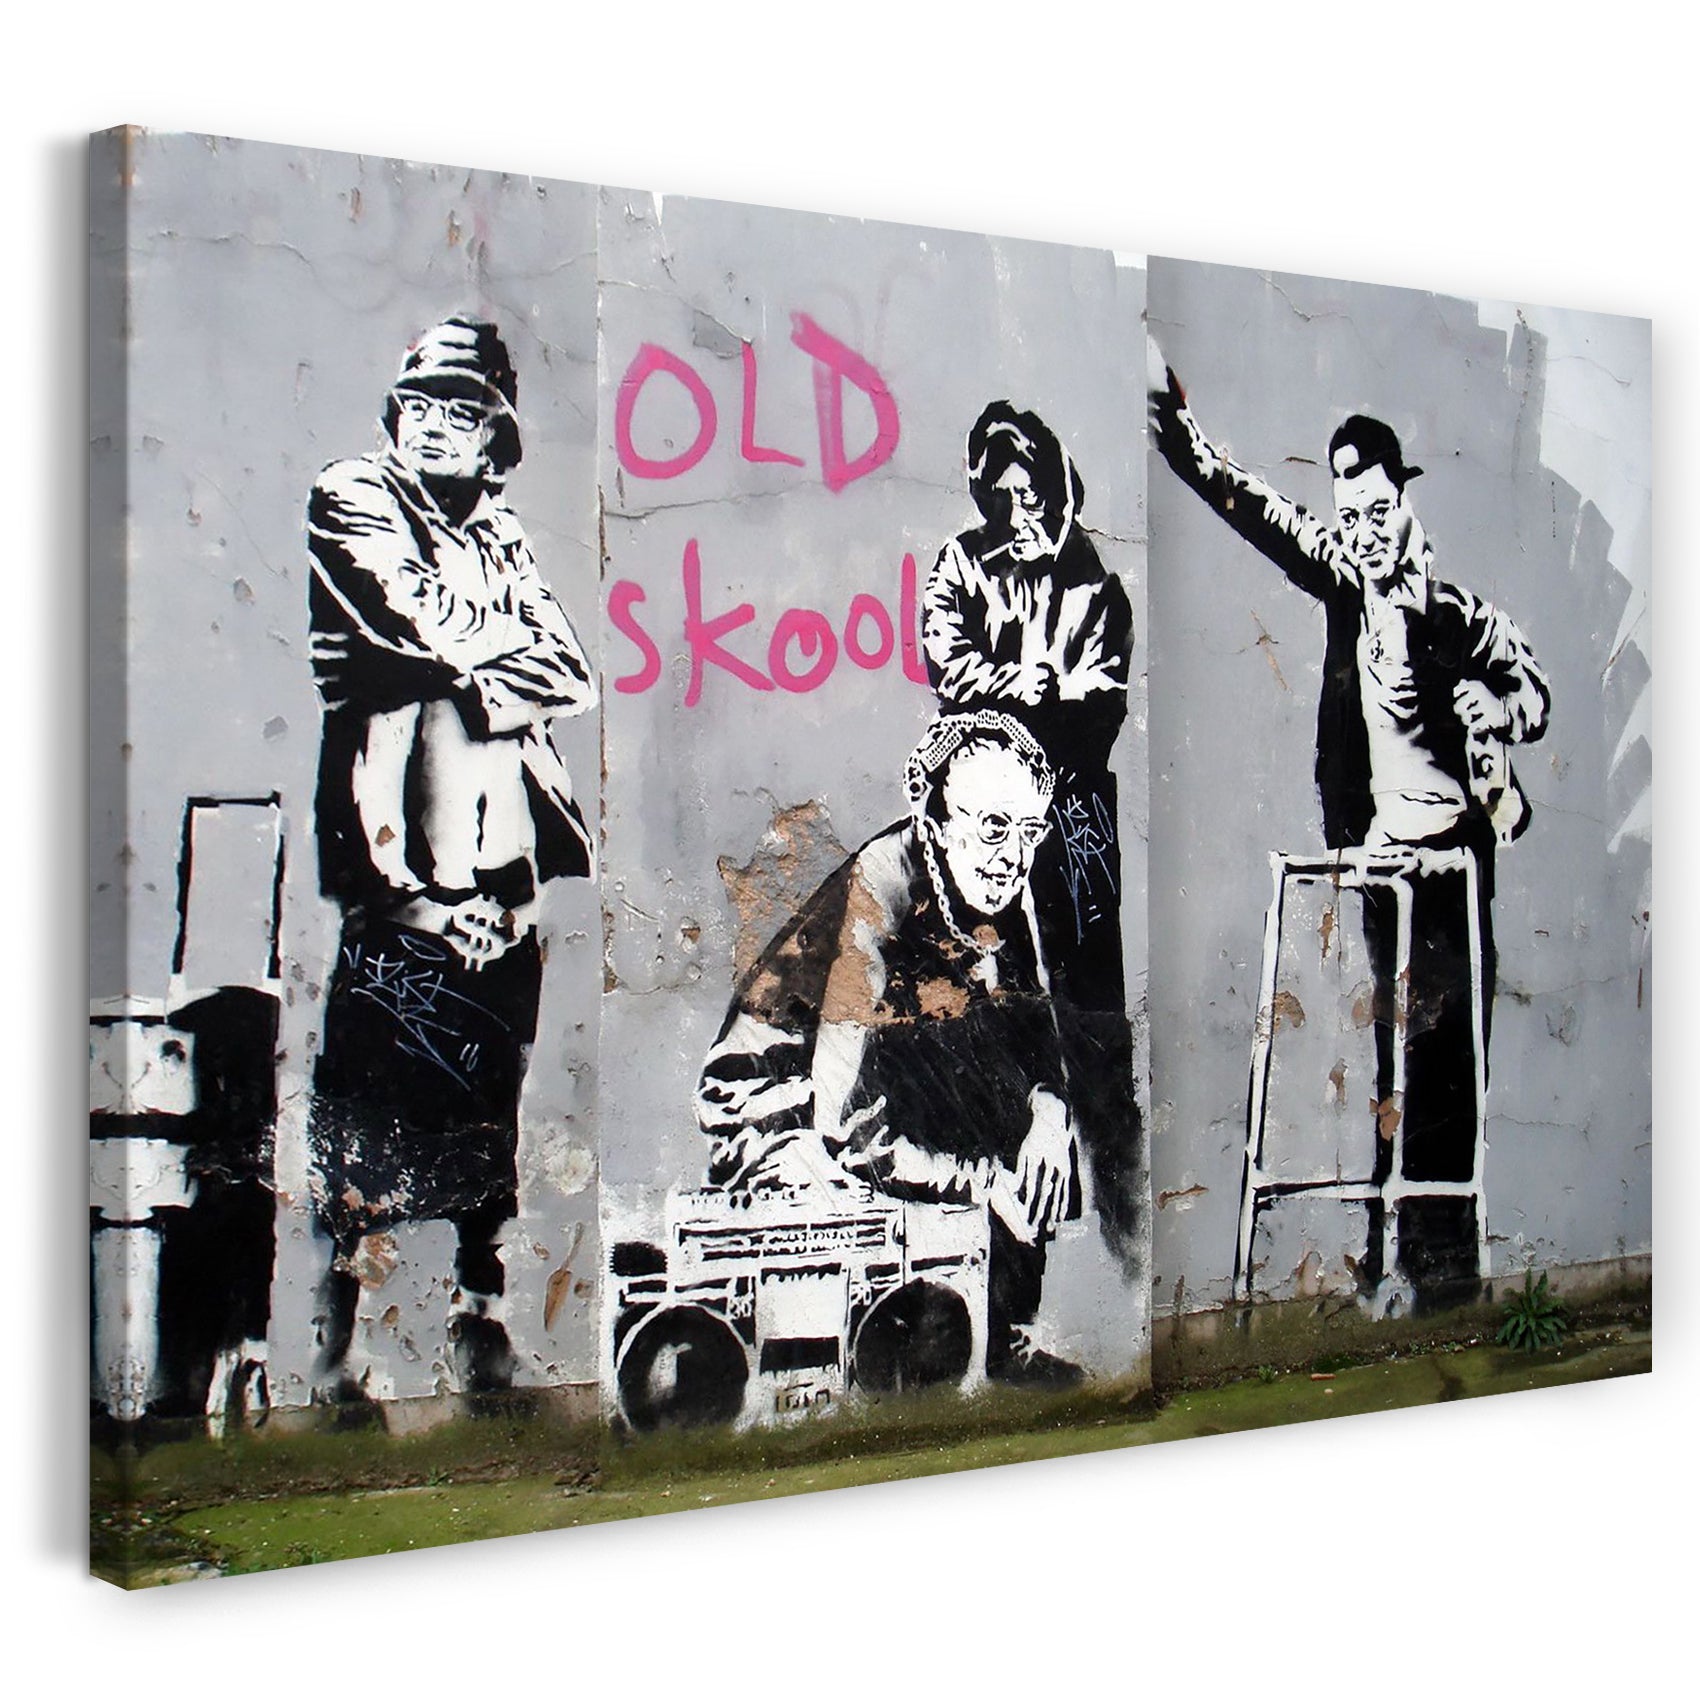 Leinwandbild Banksy - Old school skool Alte Männer zelebrieren den "realen" Hip Hop Graffiti-Wandbild cool modern